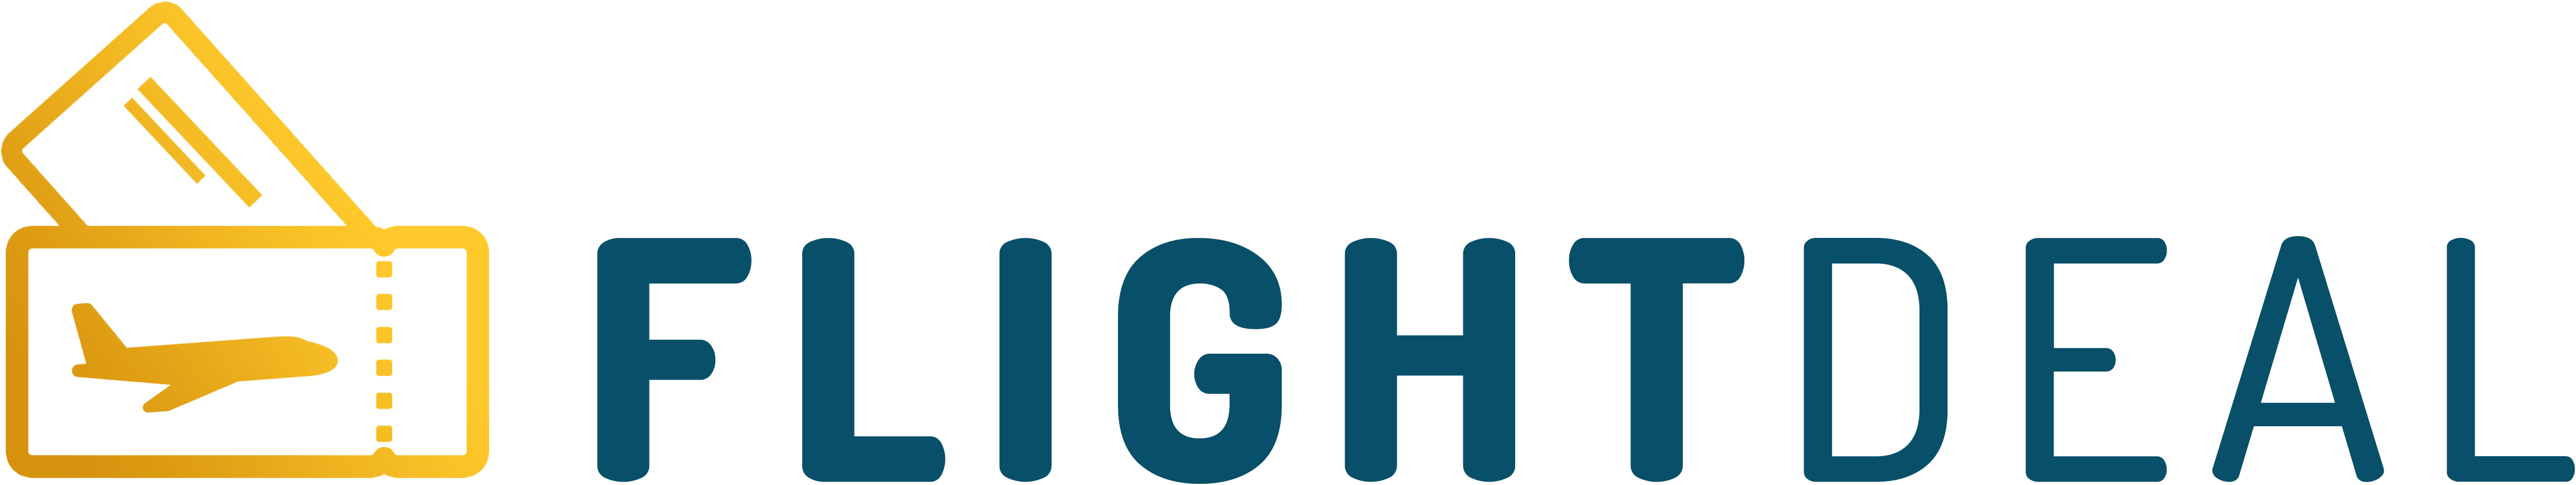 flight deal logo